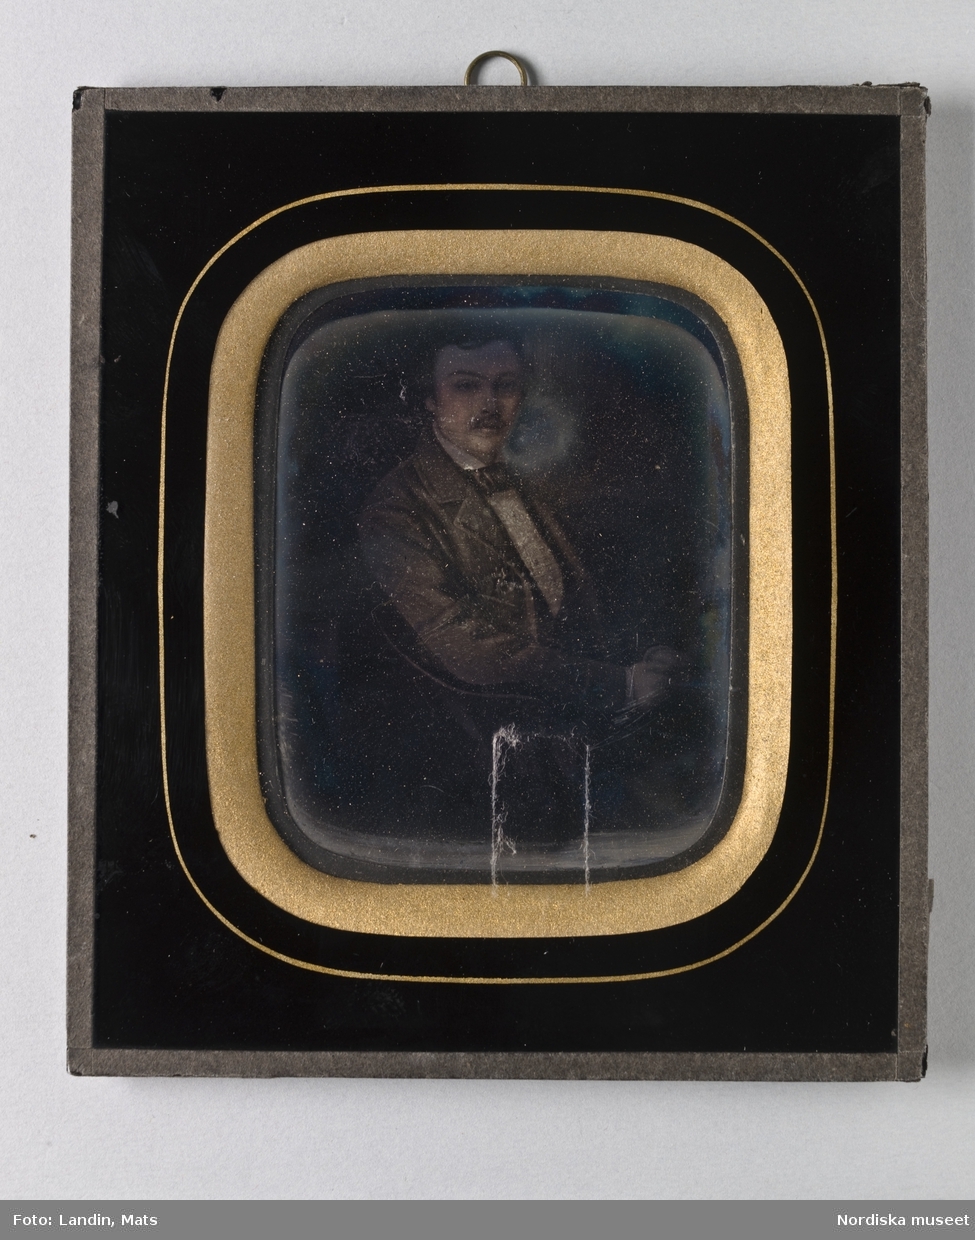 Porträtt av B. Wilhelm Magnus (1833-1852). Mustasch, klädd i bonjour och vit skjorta. Dagerrotyp / daguerreotyp i ram.
Nordiska museet inv.nr 257830
-
Portrait of B. Wilhelm Magnus (1833-1852). Sixth-plate daguerreotype.